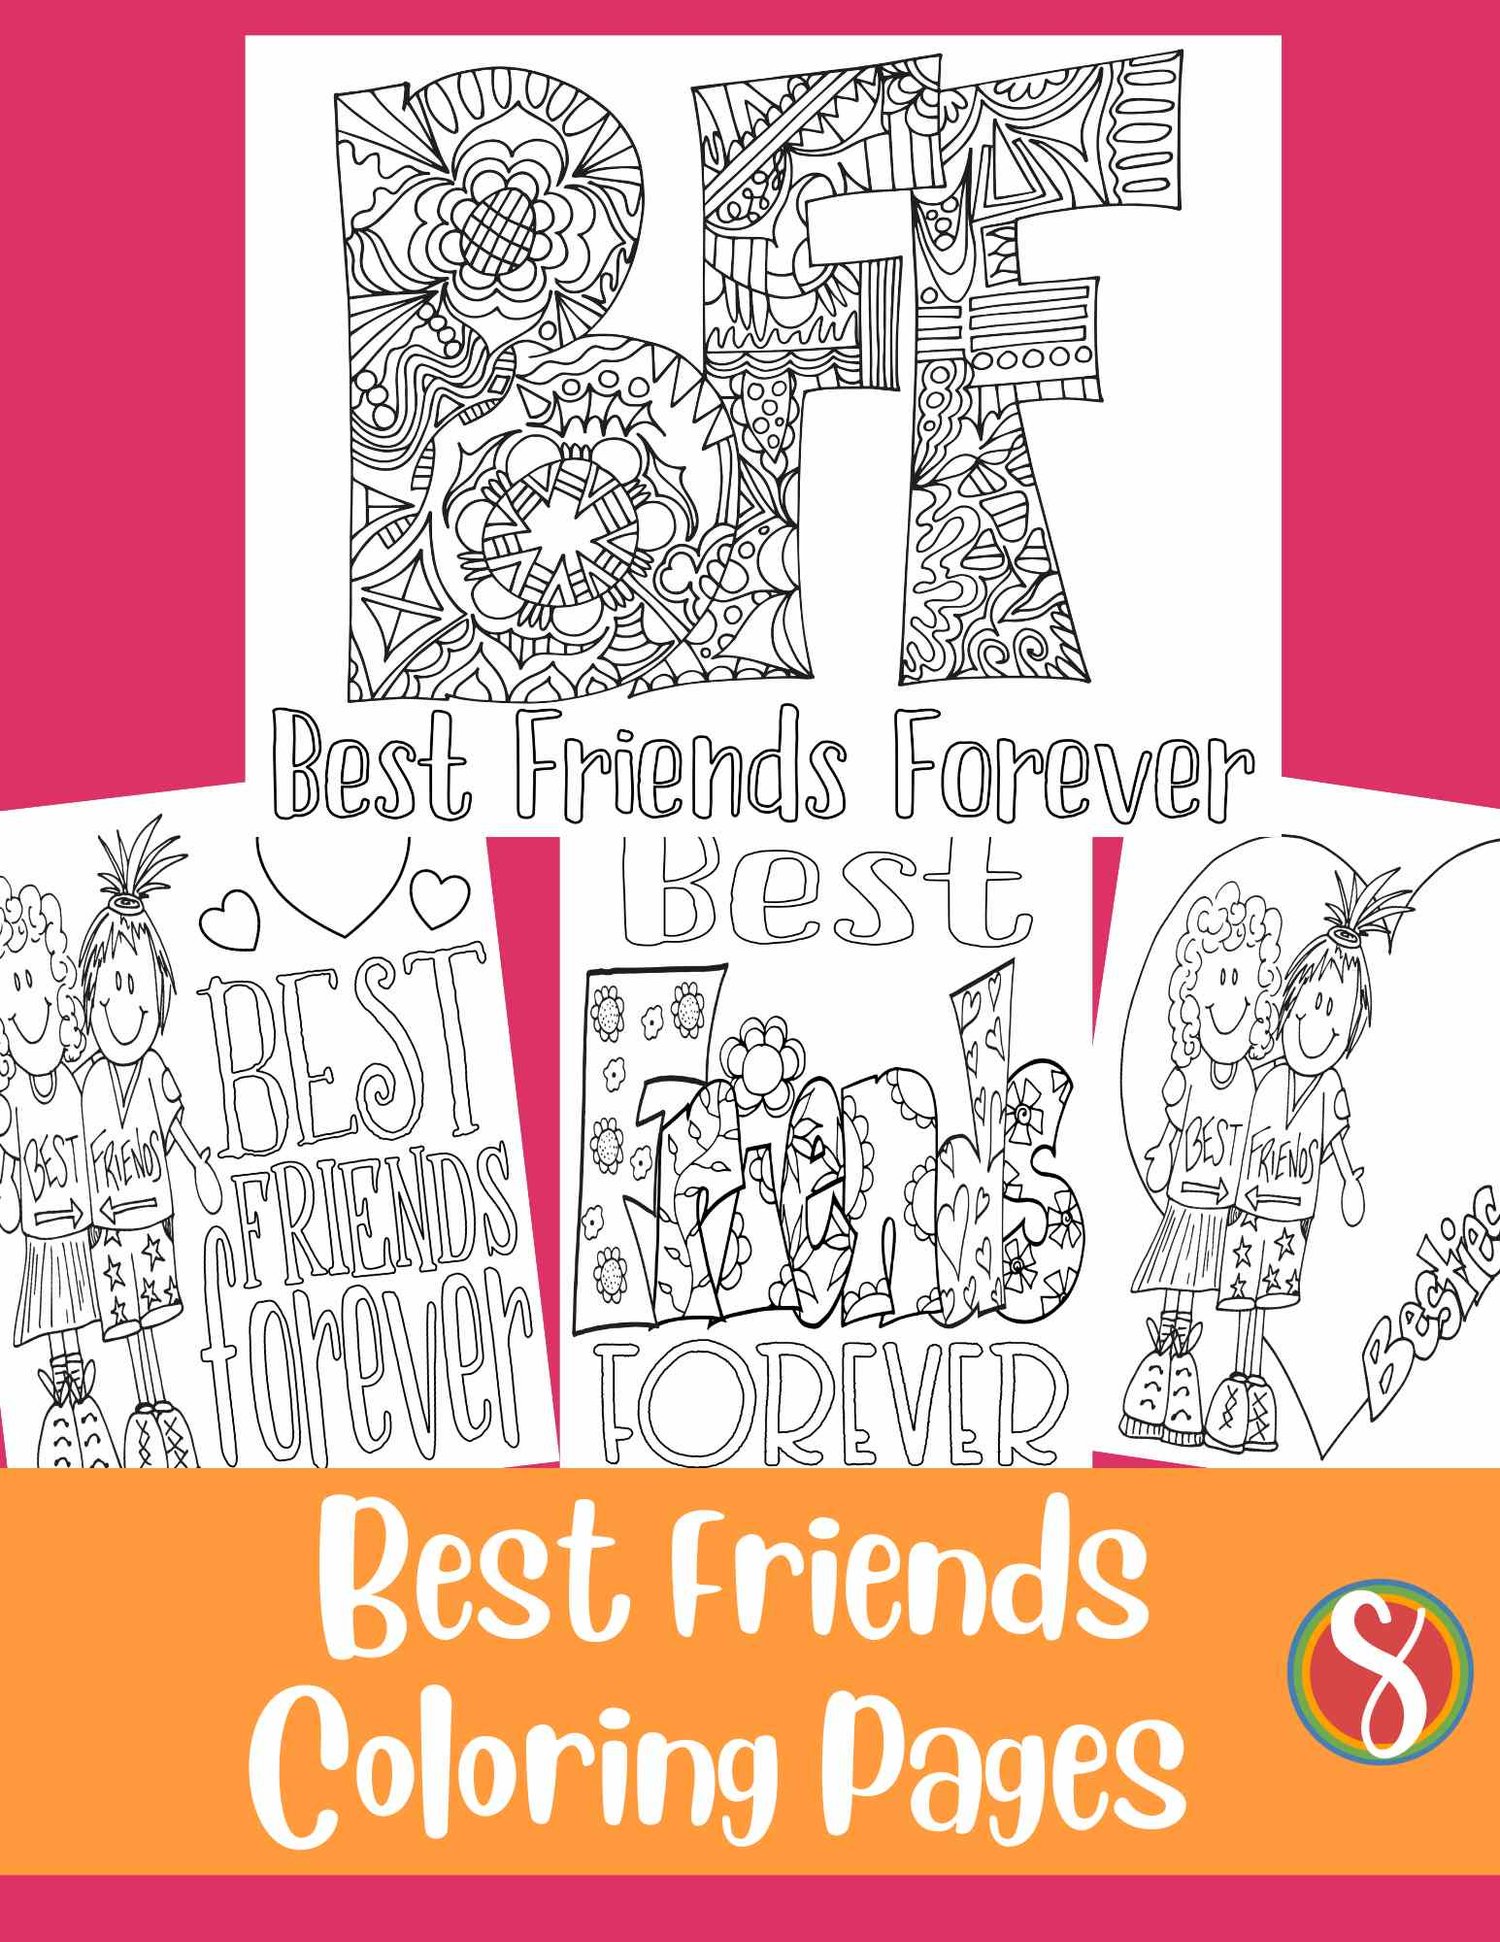 Free best friends coloring pages â stevie doodles